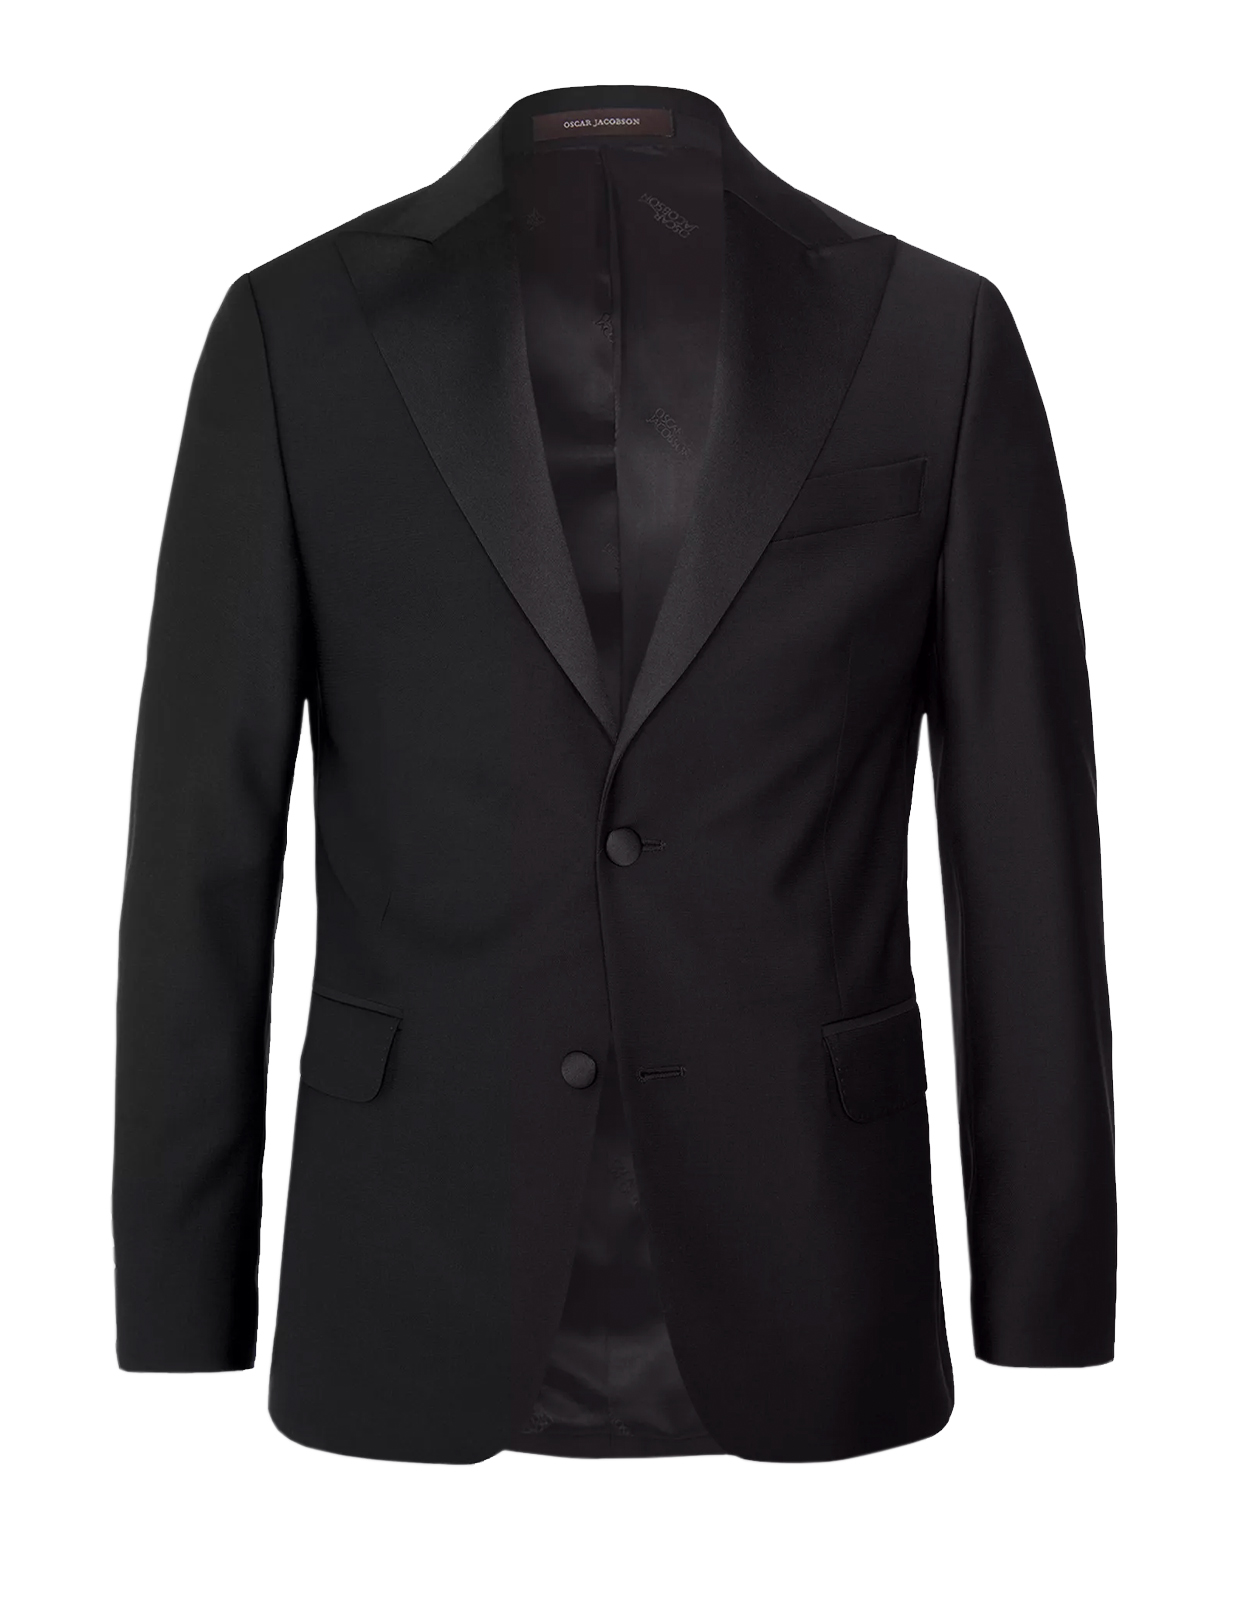 Elder Tuxedo Jacket Mix & Match Black Stl 56